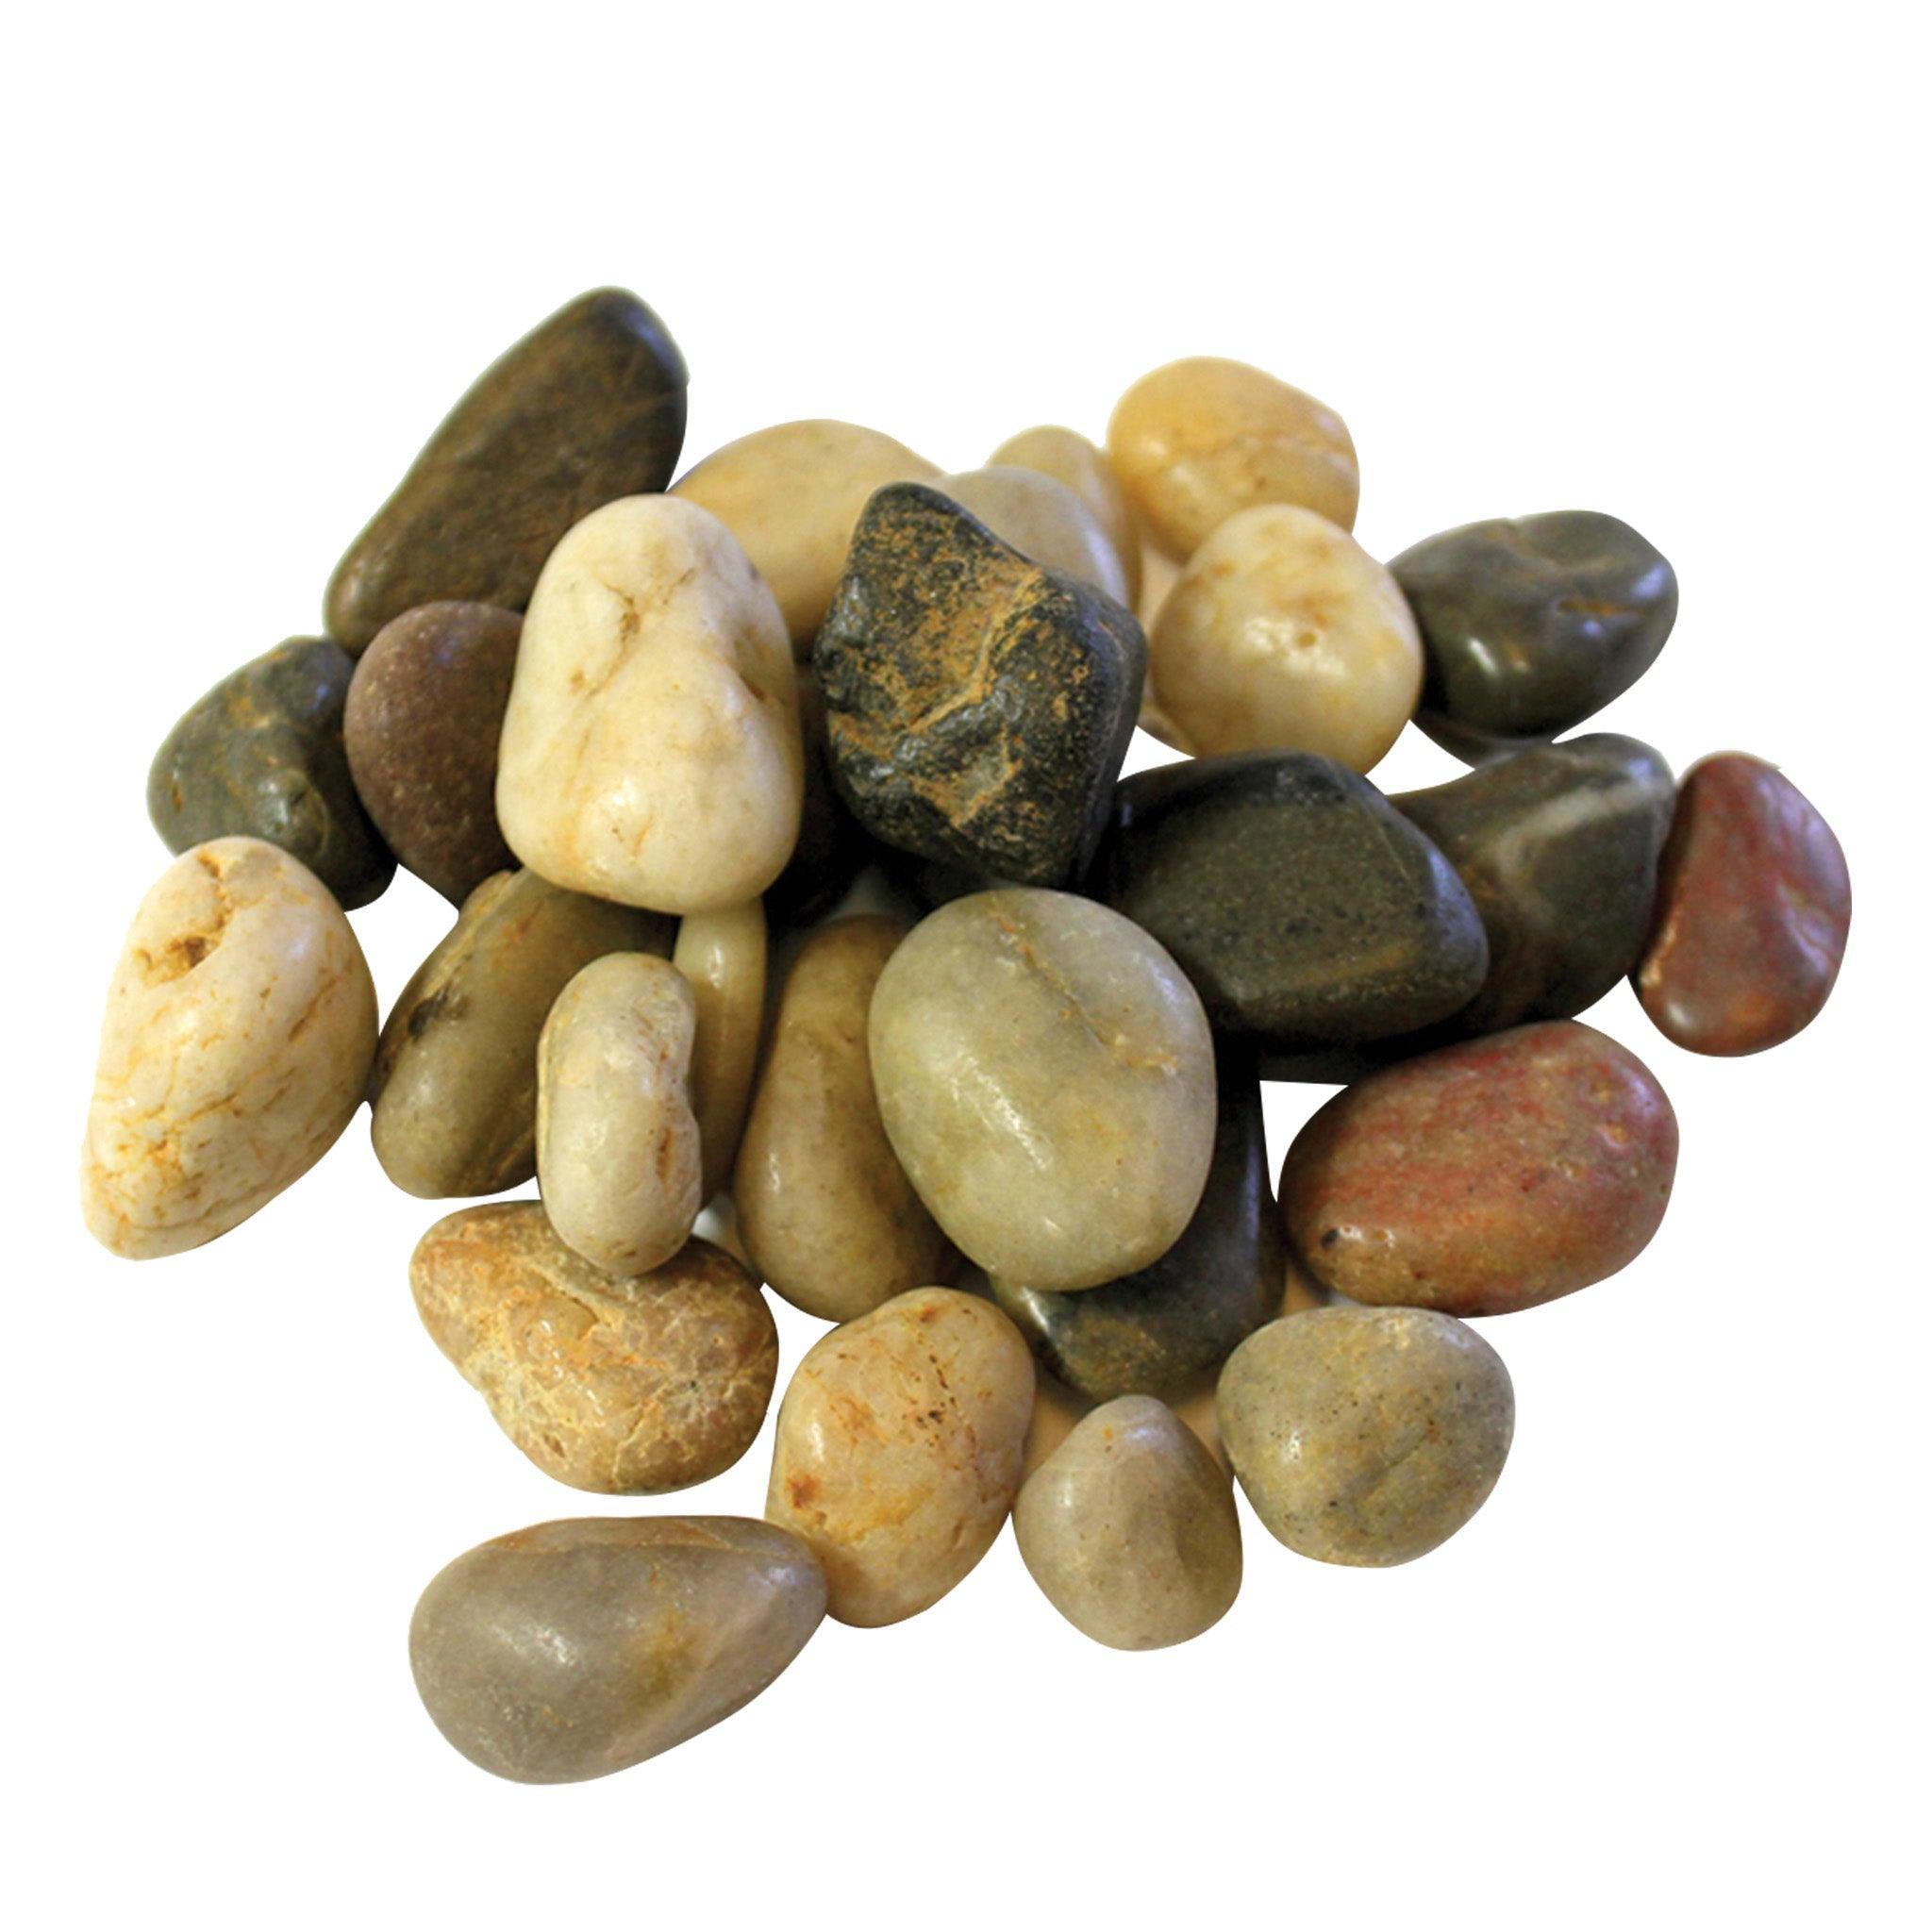 River Rock Pebbles - Matuska Taxidermy Supply Company